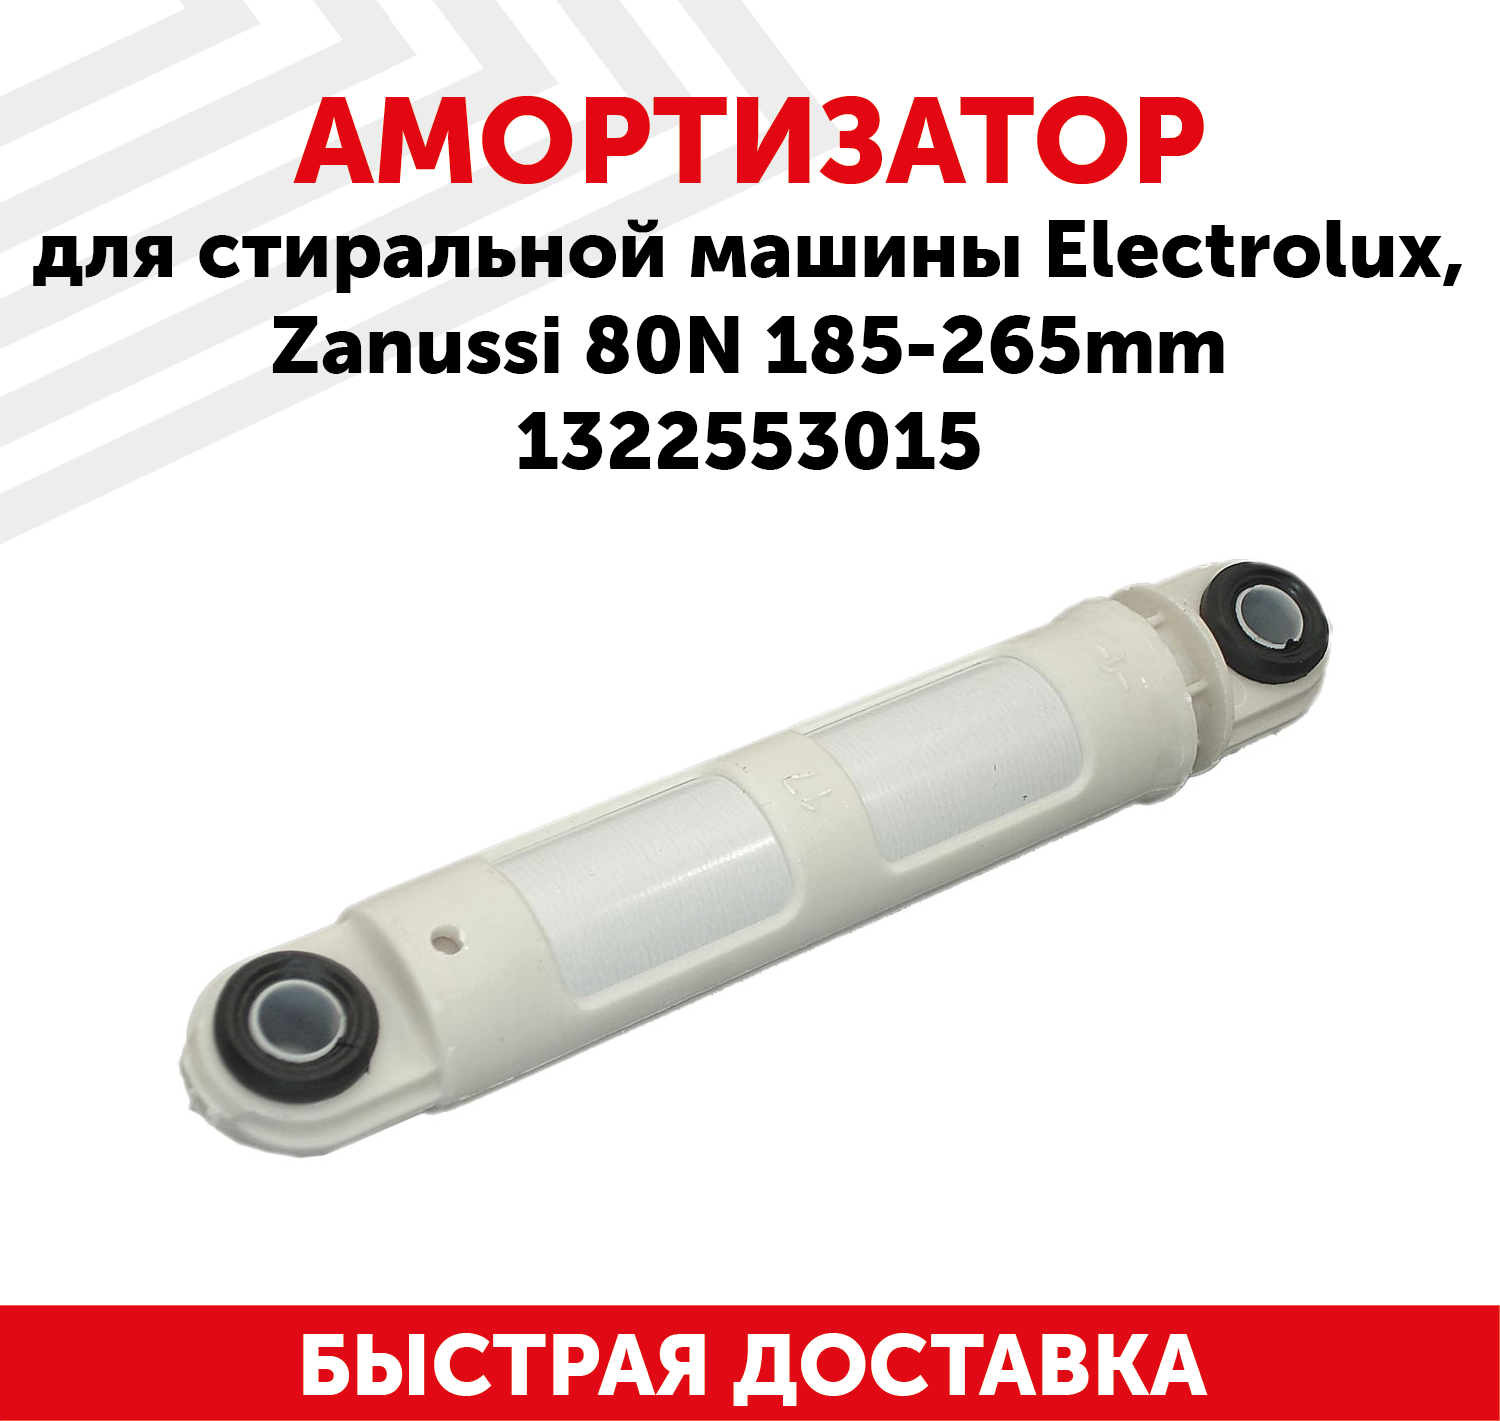 Амортизатор ZANUSSI/ELECTROLUX 80N 185265mm (втулка-11x24 пластик) 1322553015 зам 78ZN001 SAR003ZN